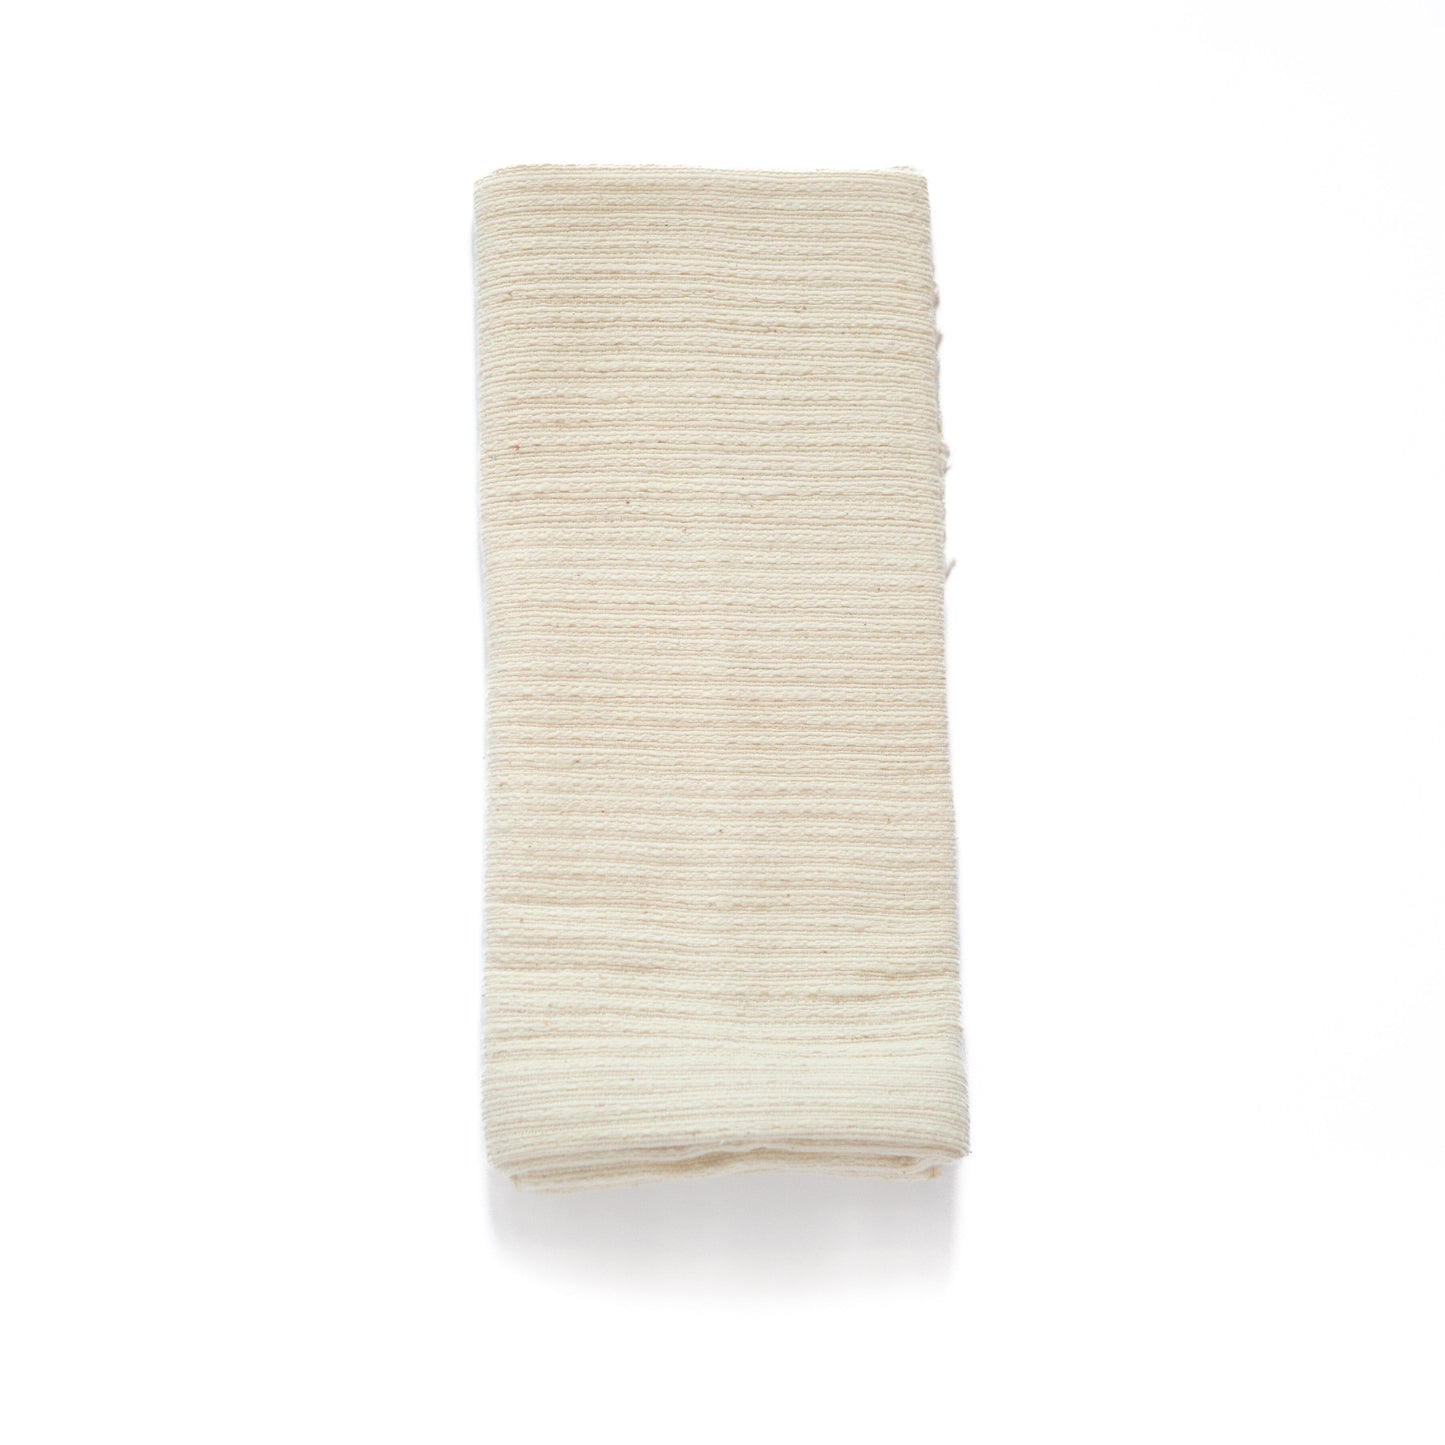 Zarima hand towel waffle towel sabahar Ivory 